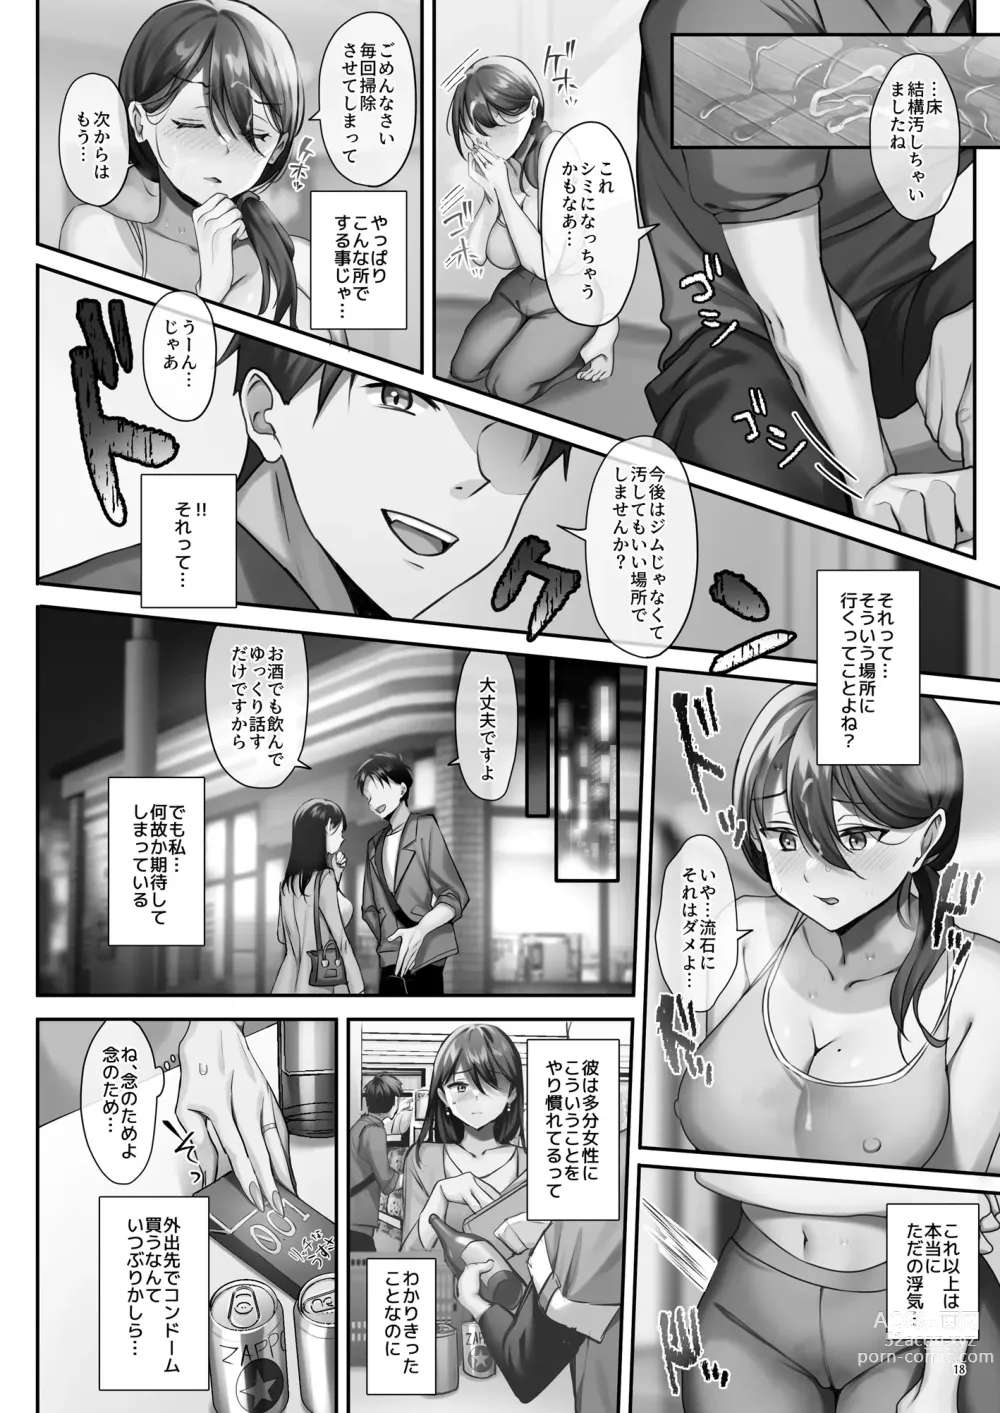 Page 59 of doujinshi Sare Tsuma to, Shuu 3 de.